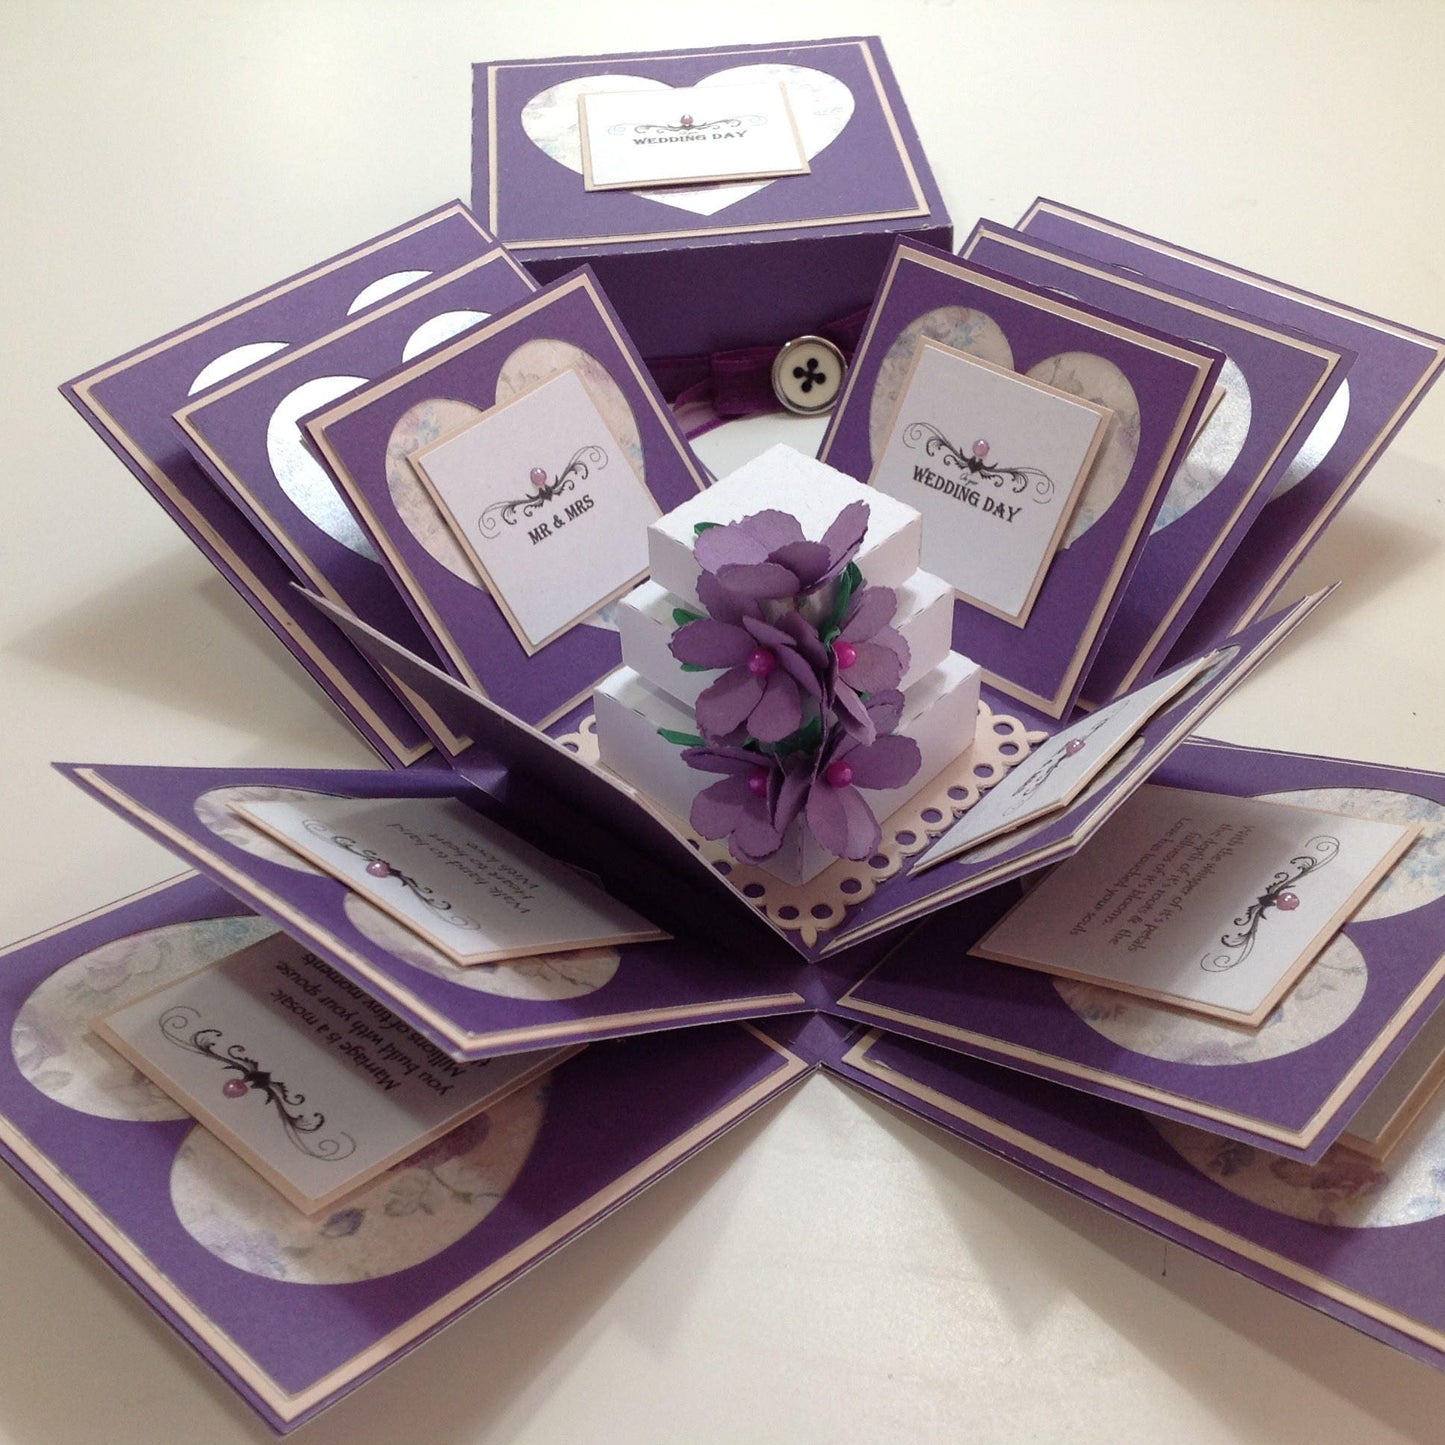 Exploding Wedding Celebration Keepsake Box ~ English Garden Range ~ Gifts for the Couple - Mr & Mrs - Wedding Day